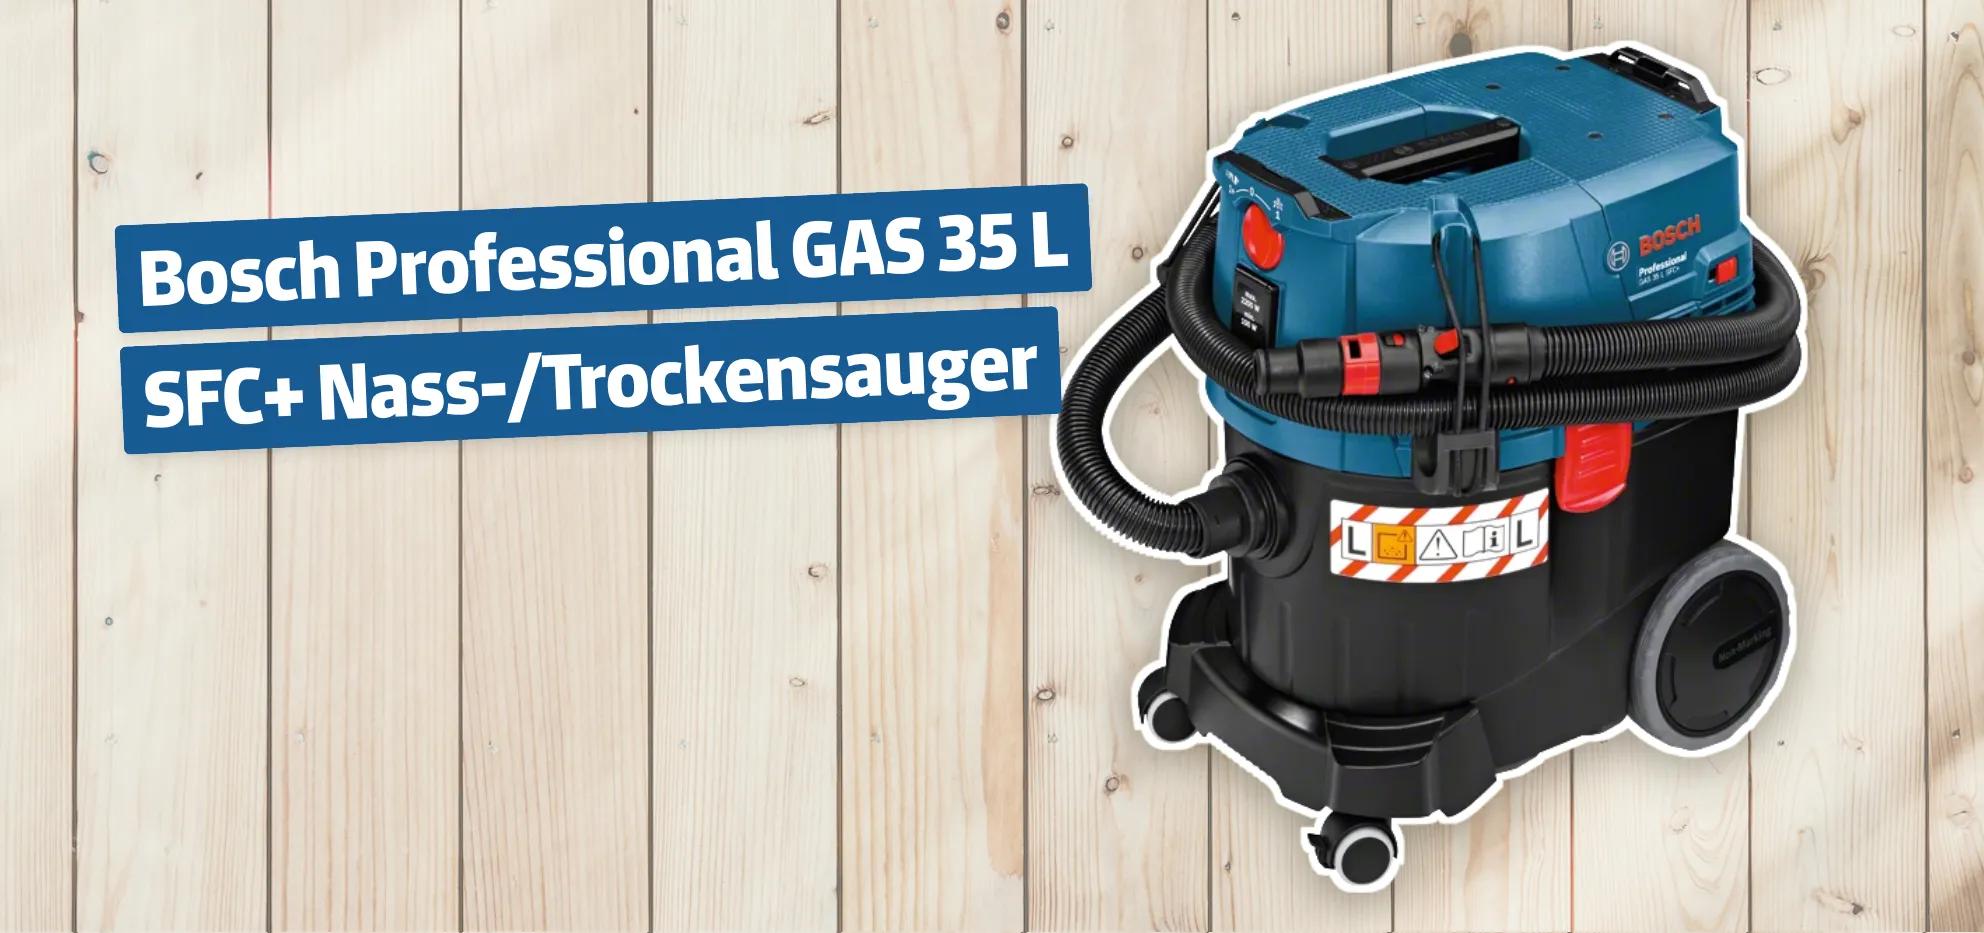 Bosch Professional GAS 35 L SFC+ Nass-/Trockensauger